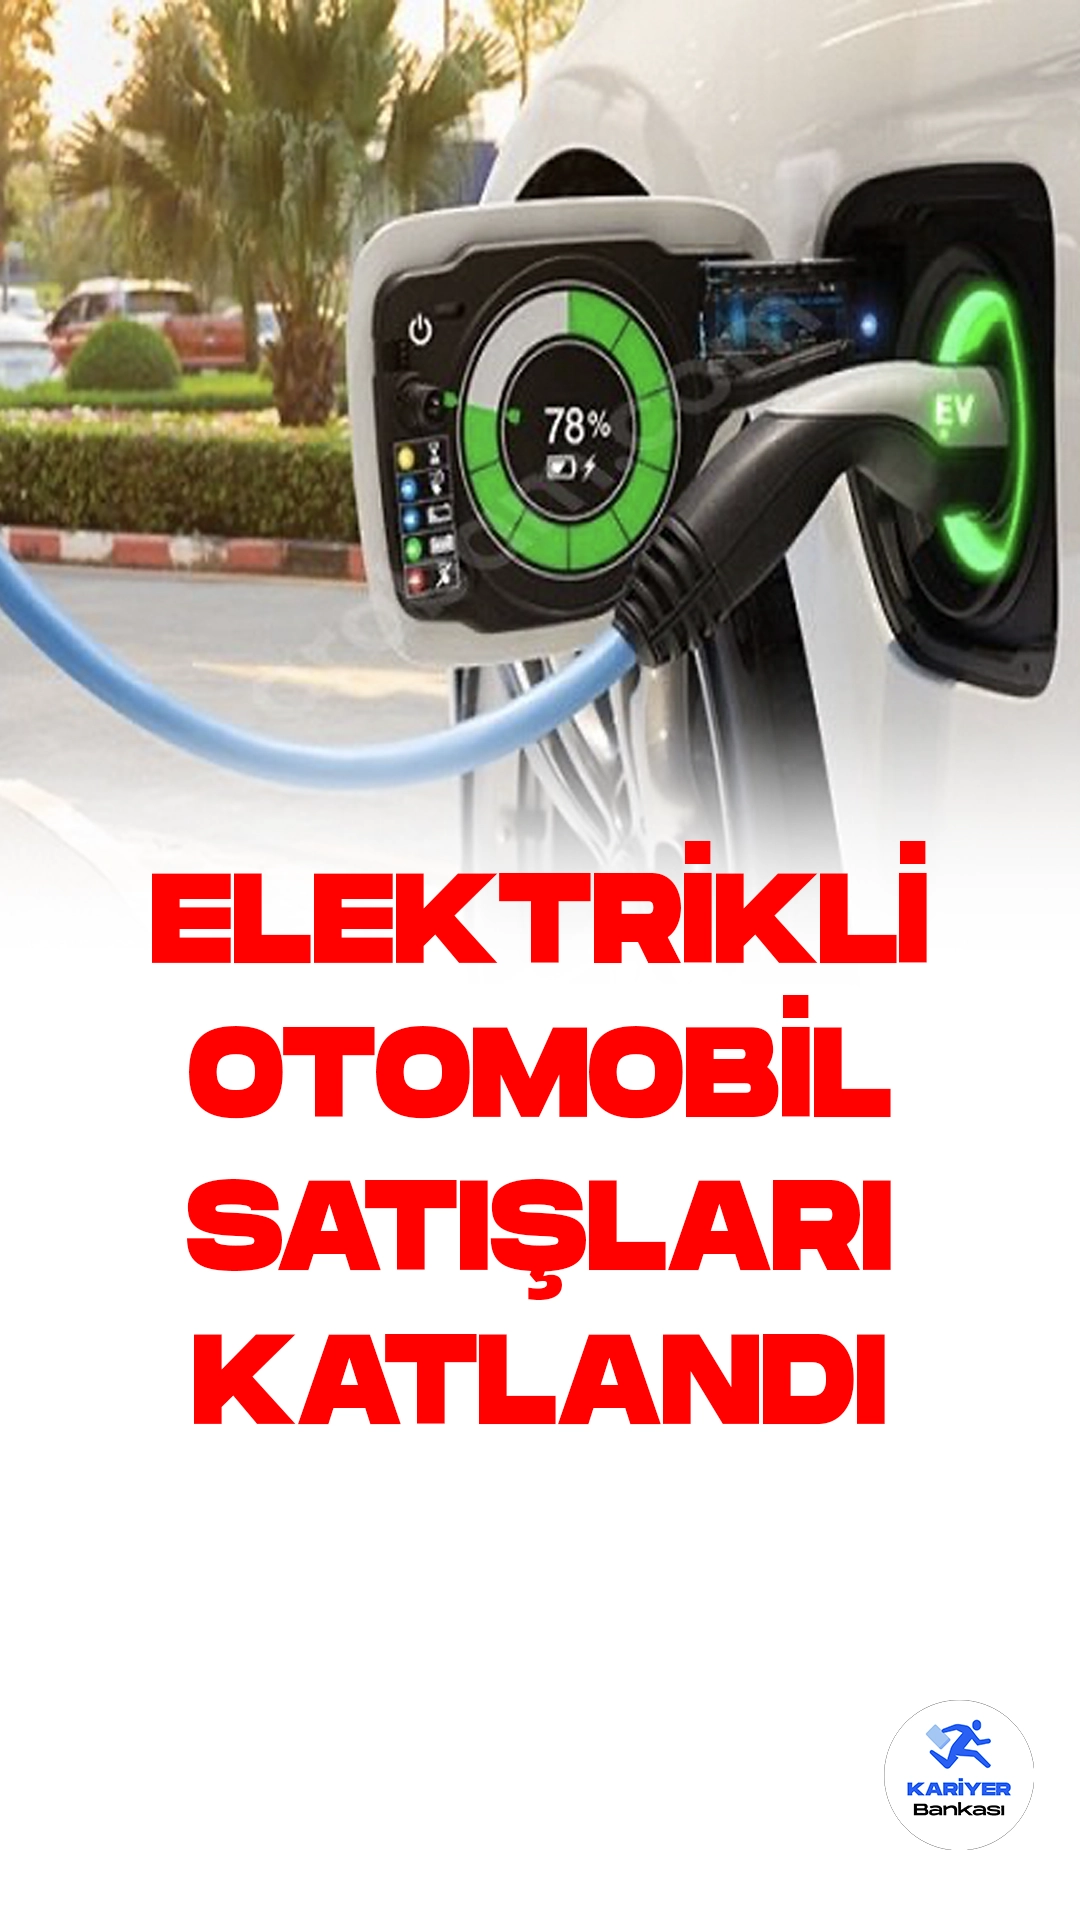 Türkiye'de Elektrikli Otomobil Satışları Geçen Yıla Göre Büyük Artış Kaydetti.Türkiye otomobil pazarında, bu yılın ilk altı ayında elektrikli otomobil satışları önemli bir ivme kazandı. Geçen yılın aynı dönemine kıyasla yüzde 465,3'lük bir artışla 12 bin 792 adete ulaştı.